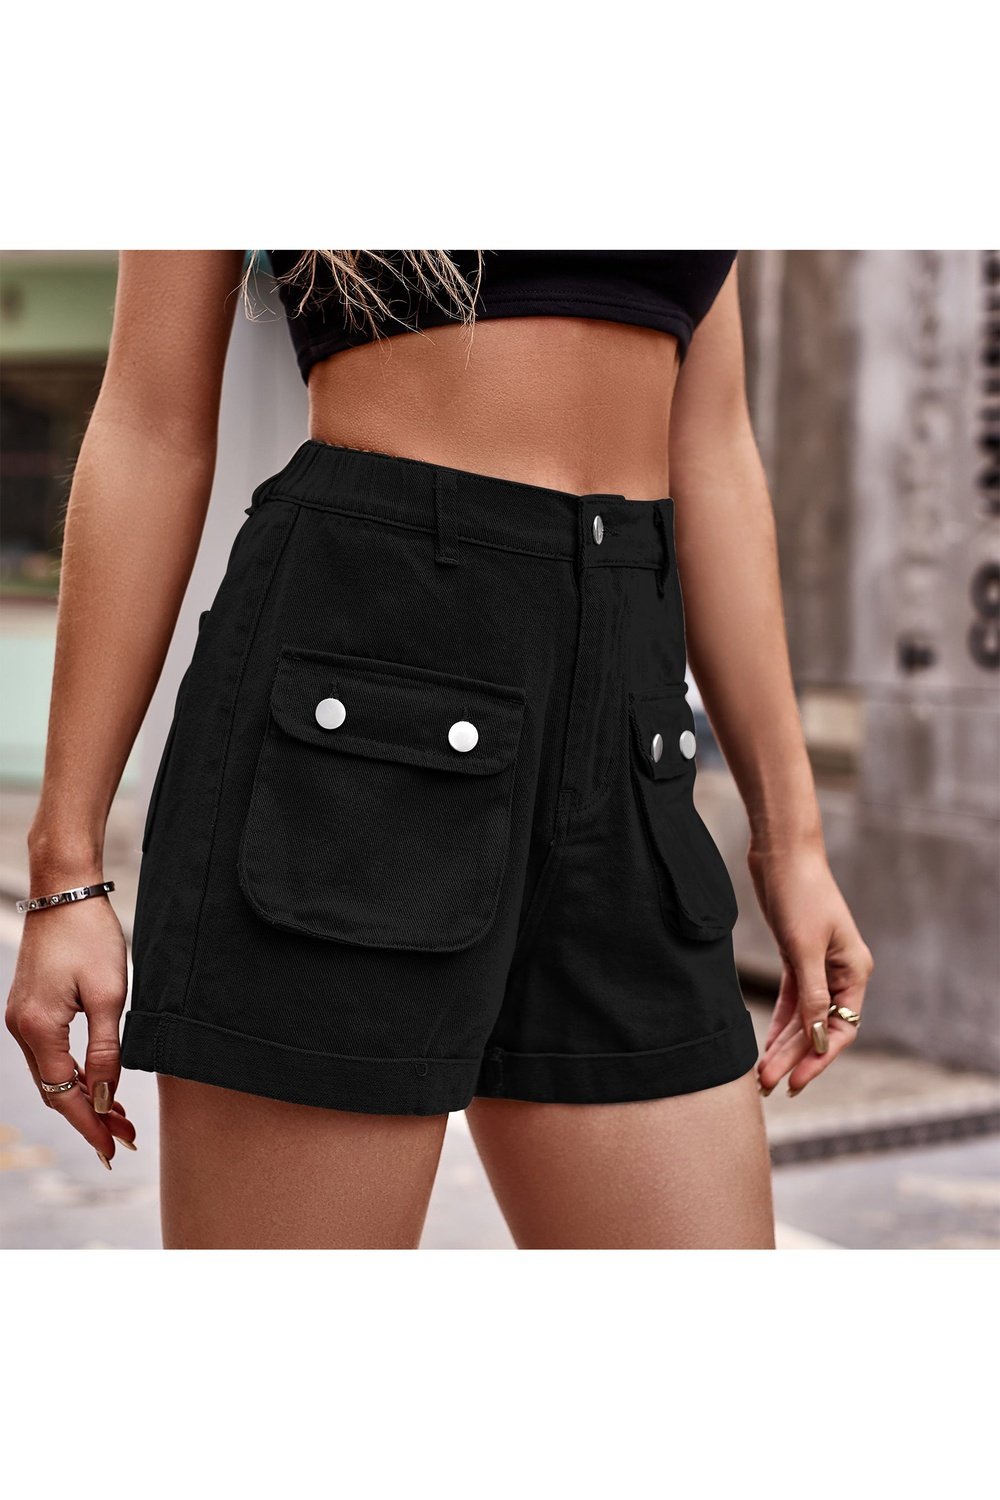 Cuffed Denim Shorts with Pockets - Denim Shorts - FITGGINS